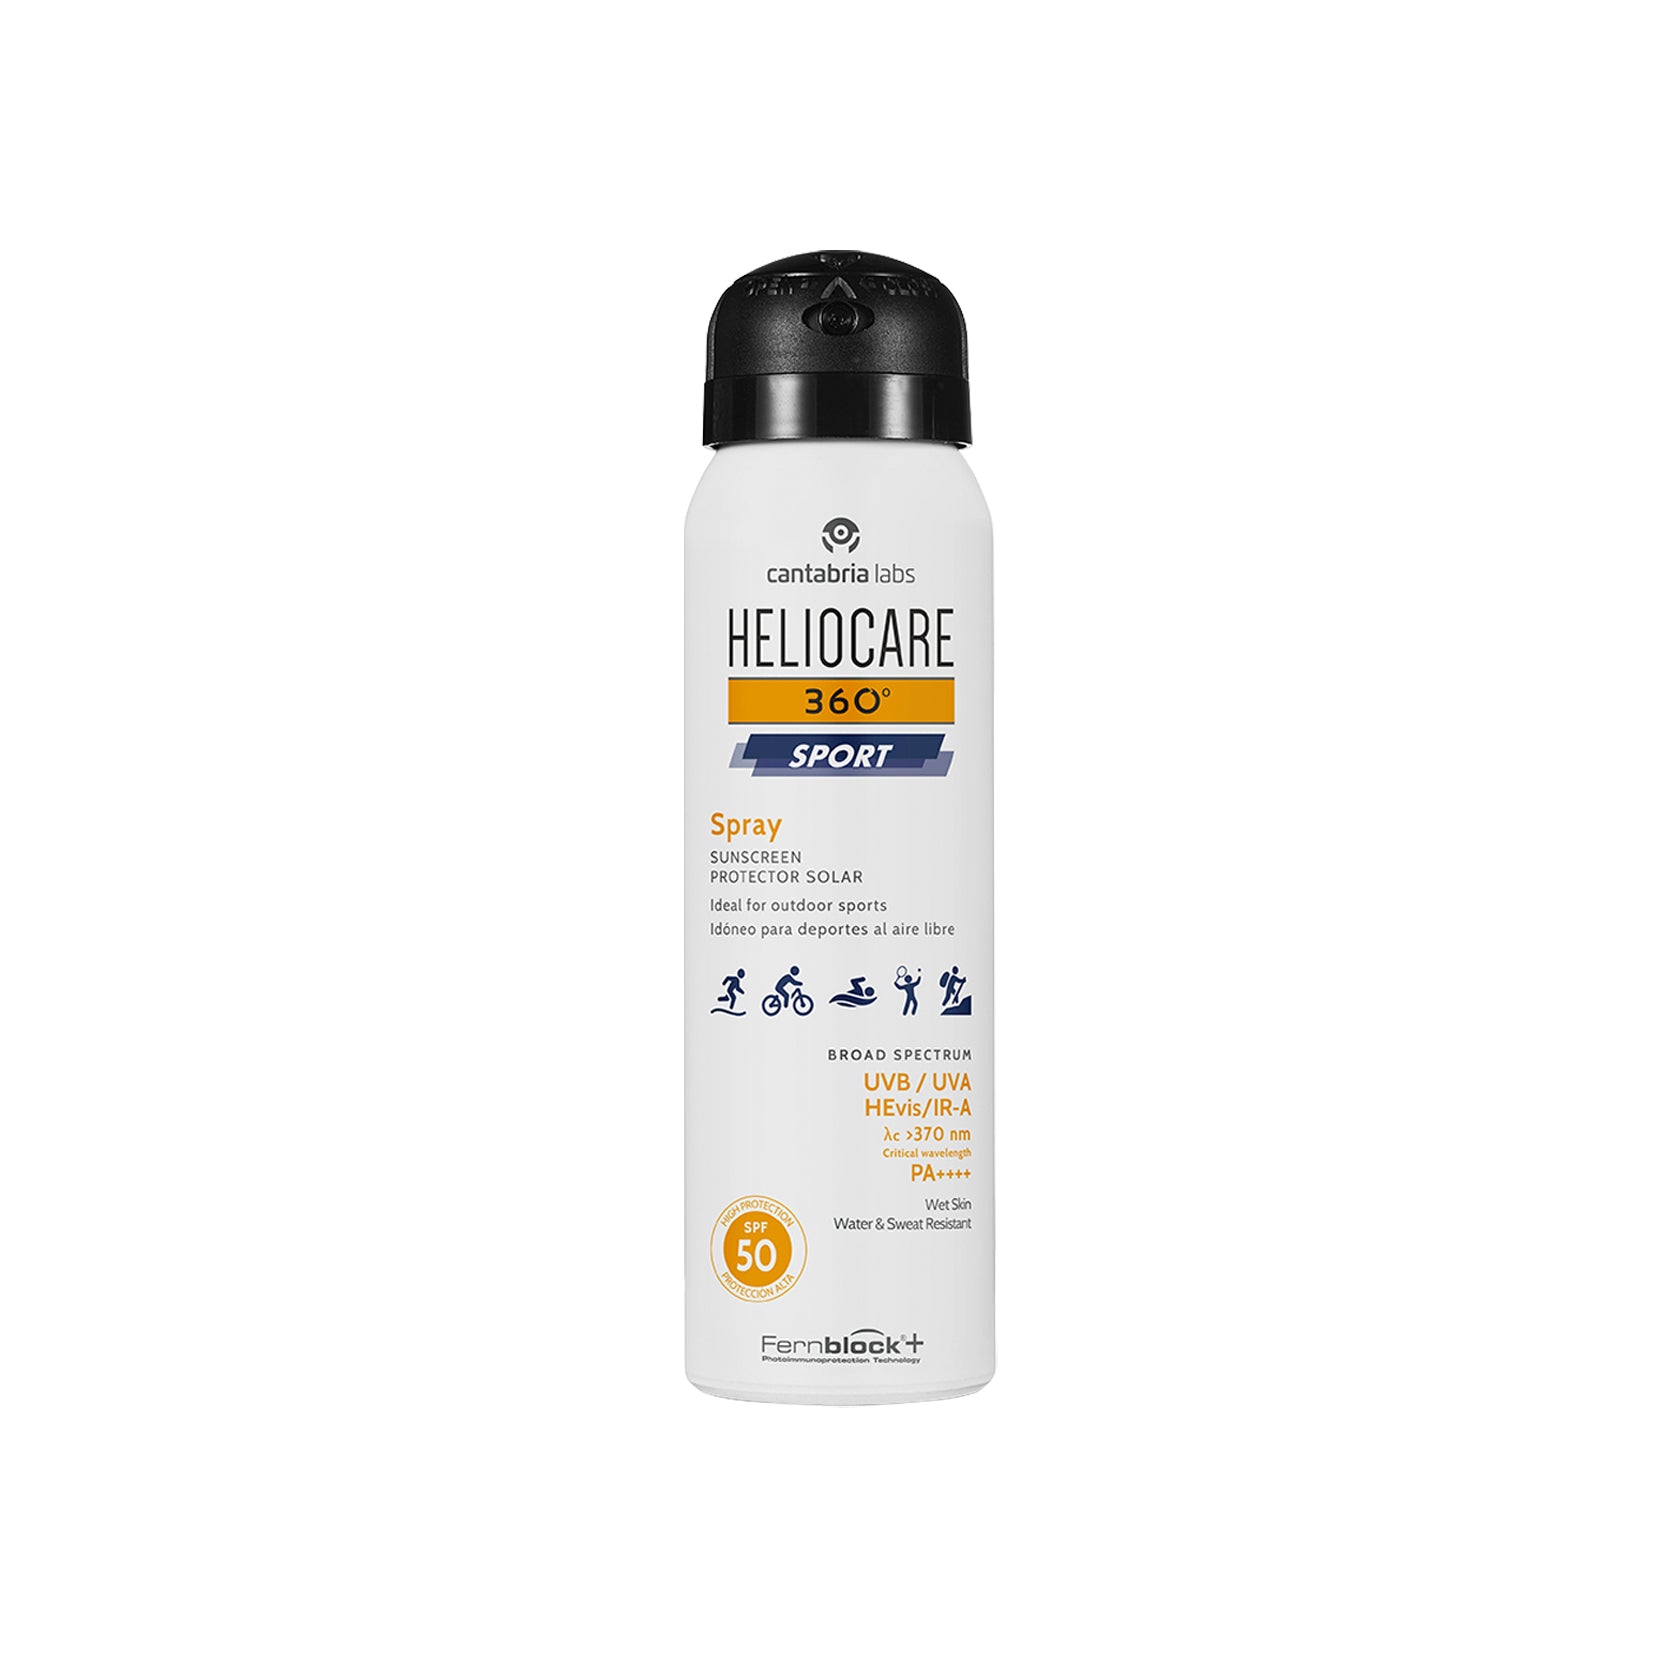 Heliocare 360º Sport Sunscreen Spray SPF50 100ml